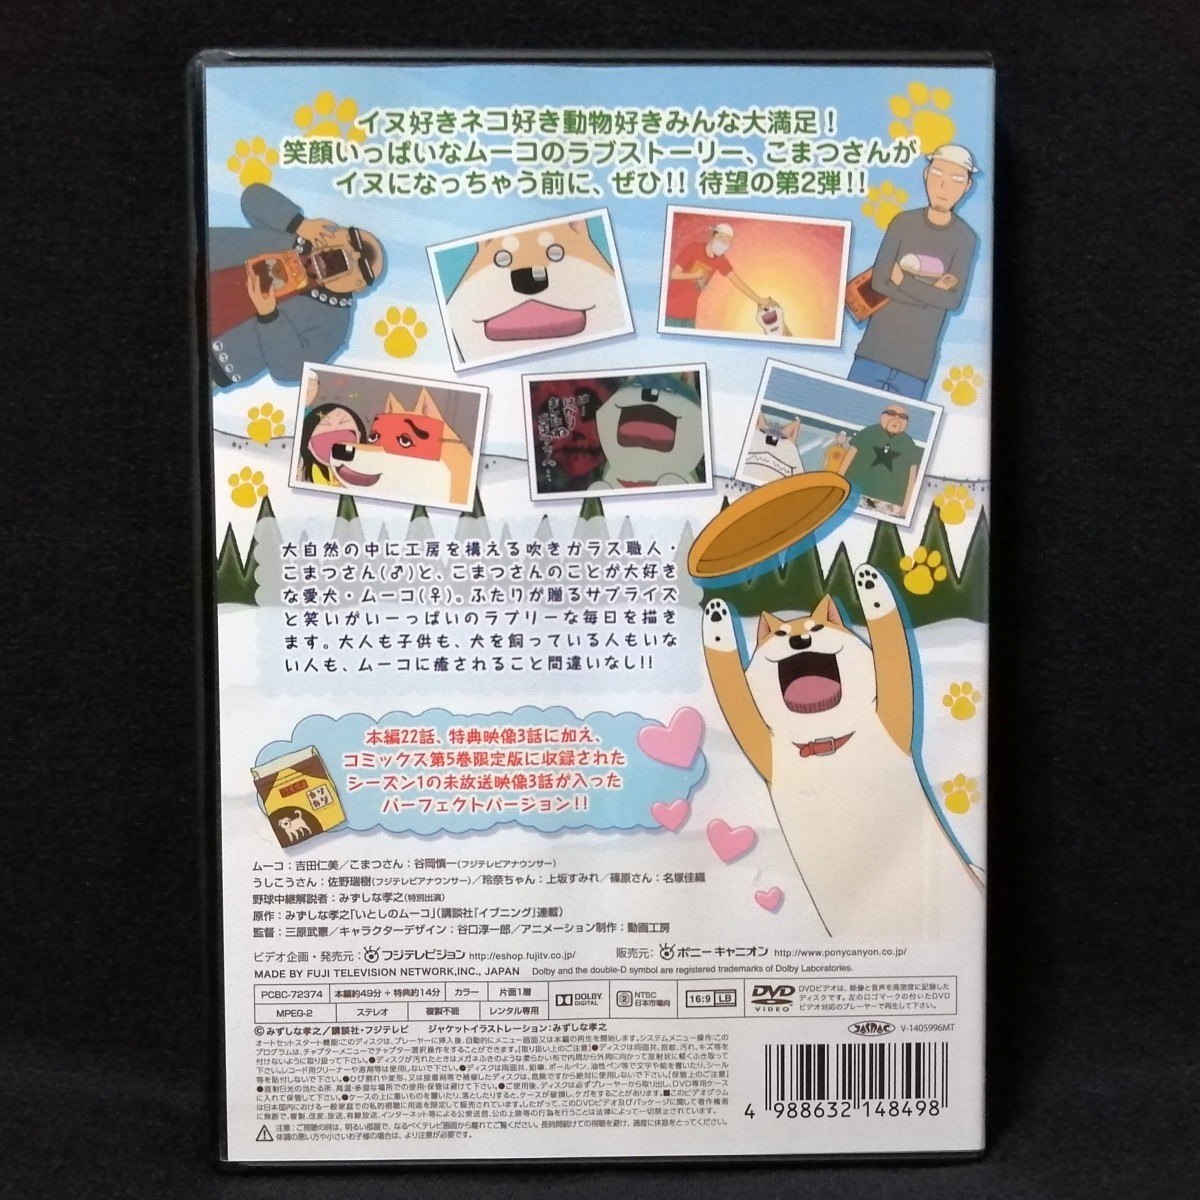 DVD ラブリームービー いとしのムーコ シーズン2 レンタル版